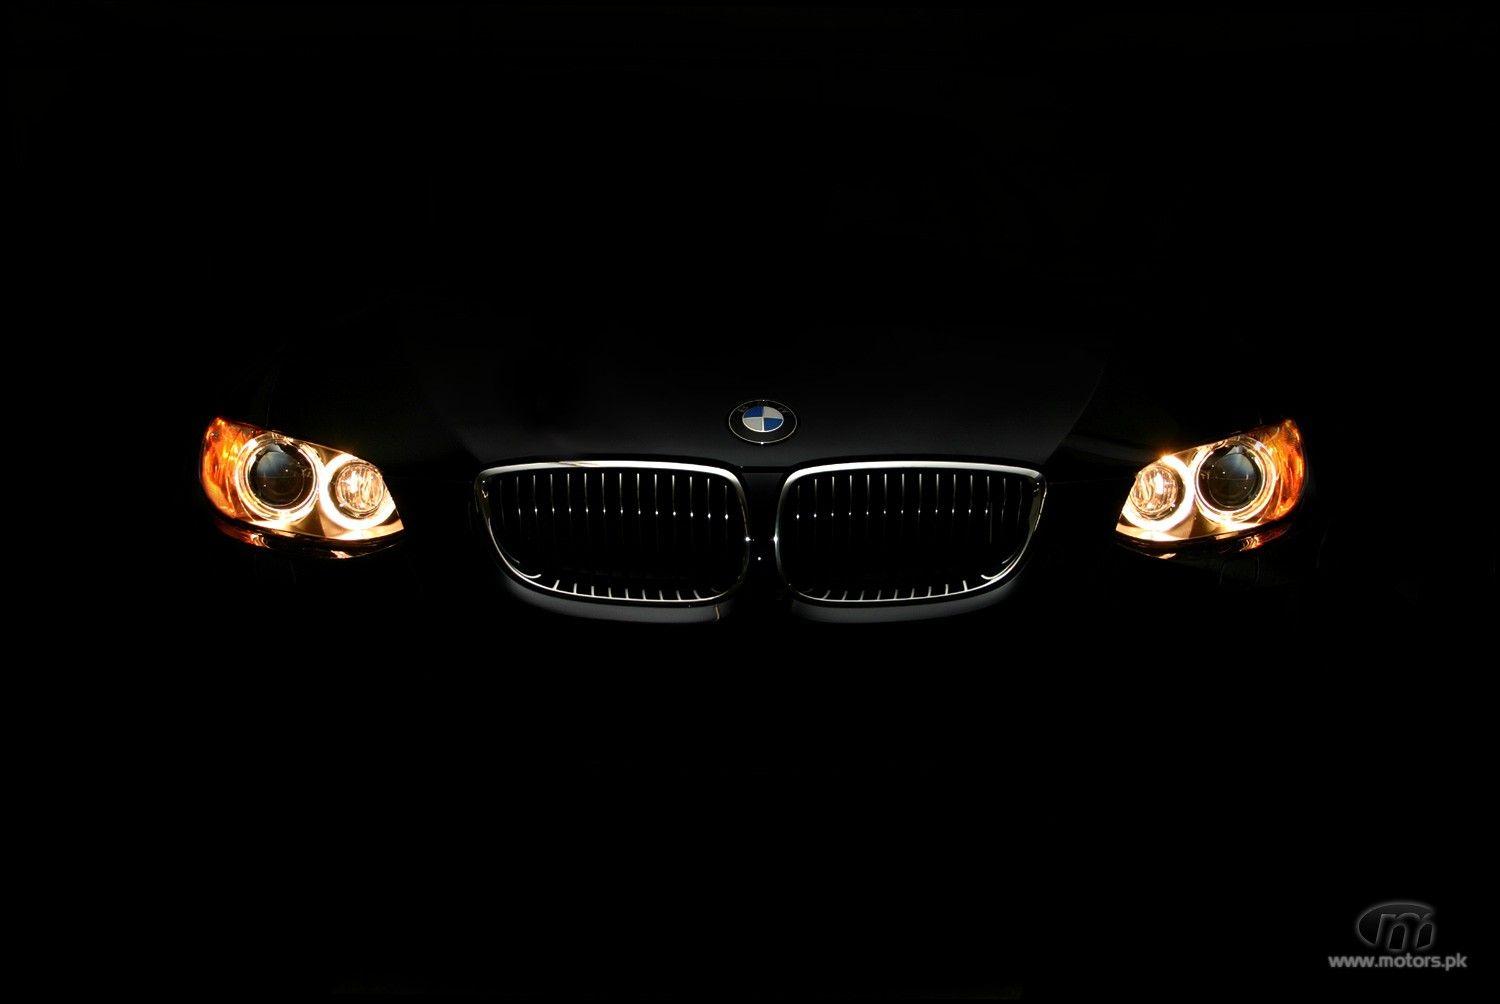 BMW 3 Series Wallpaper